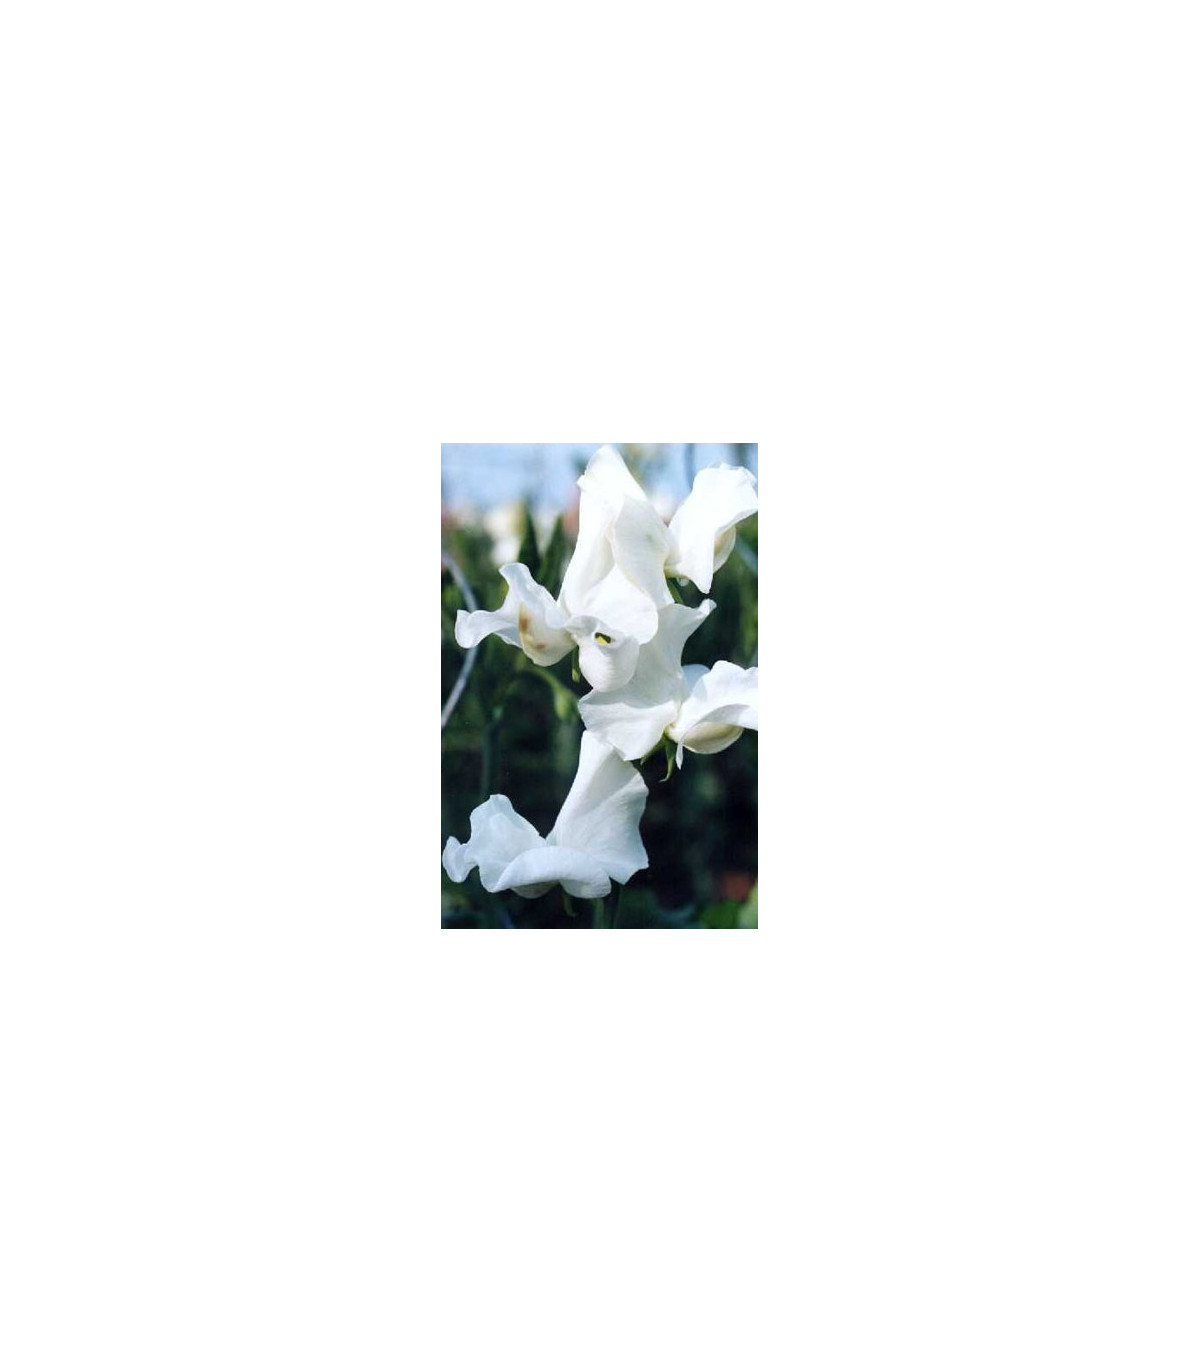 Hrachor pnoucí královský bílý - Lathyrus odoratus - prodej semen - 20 ks